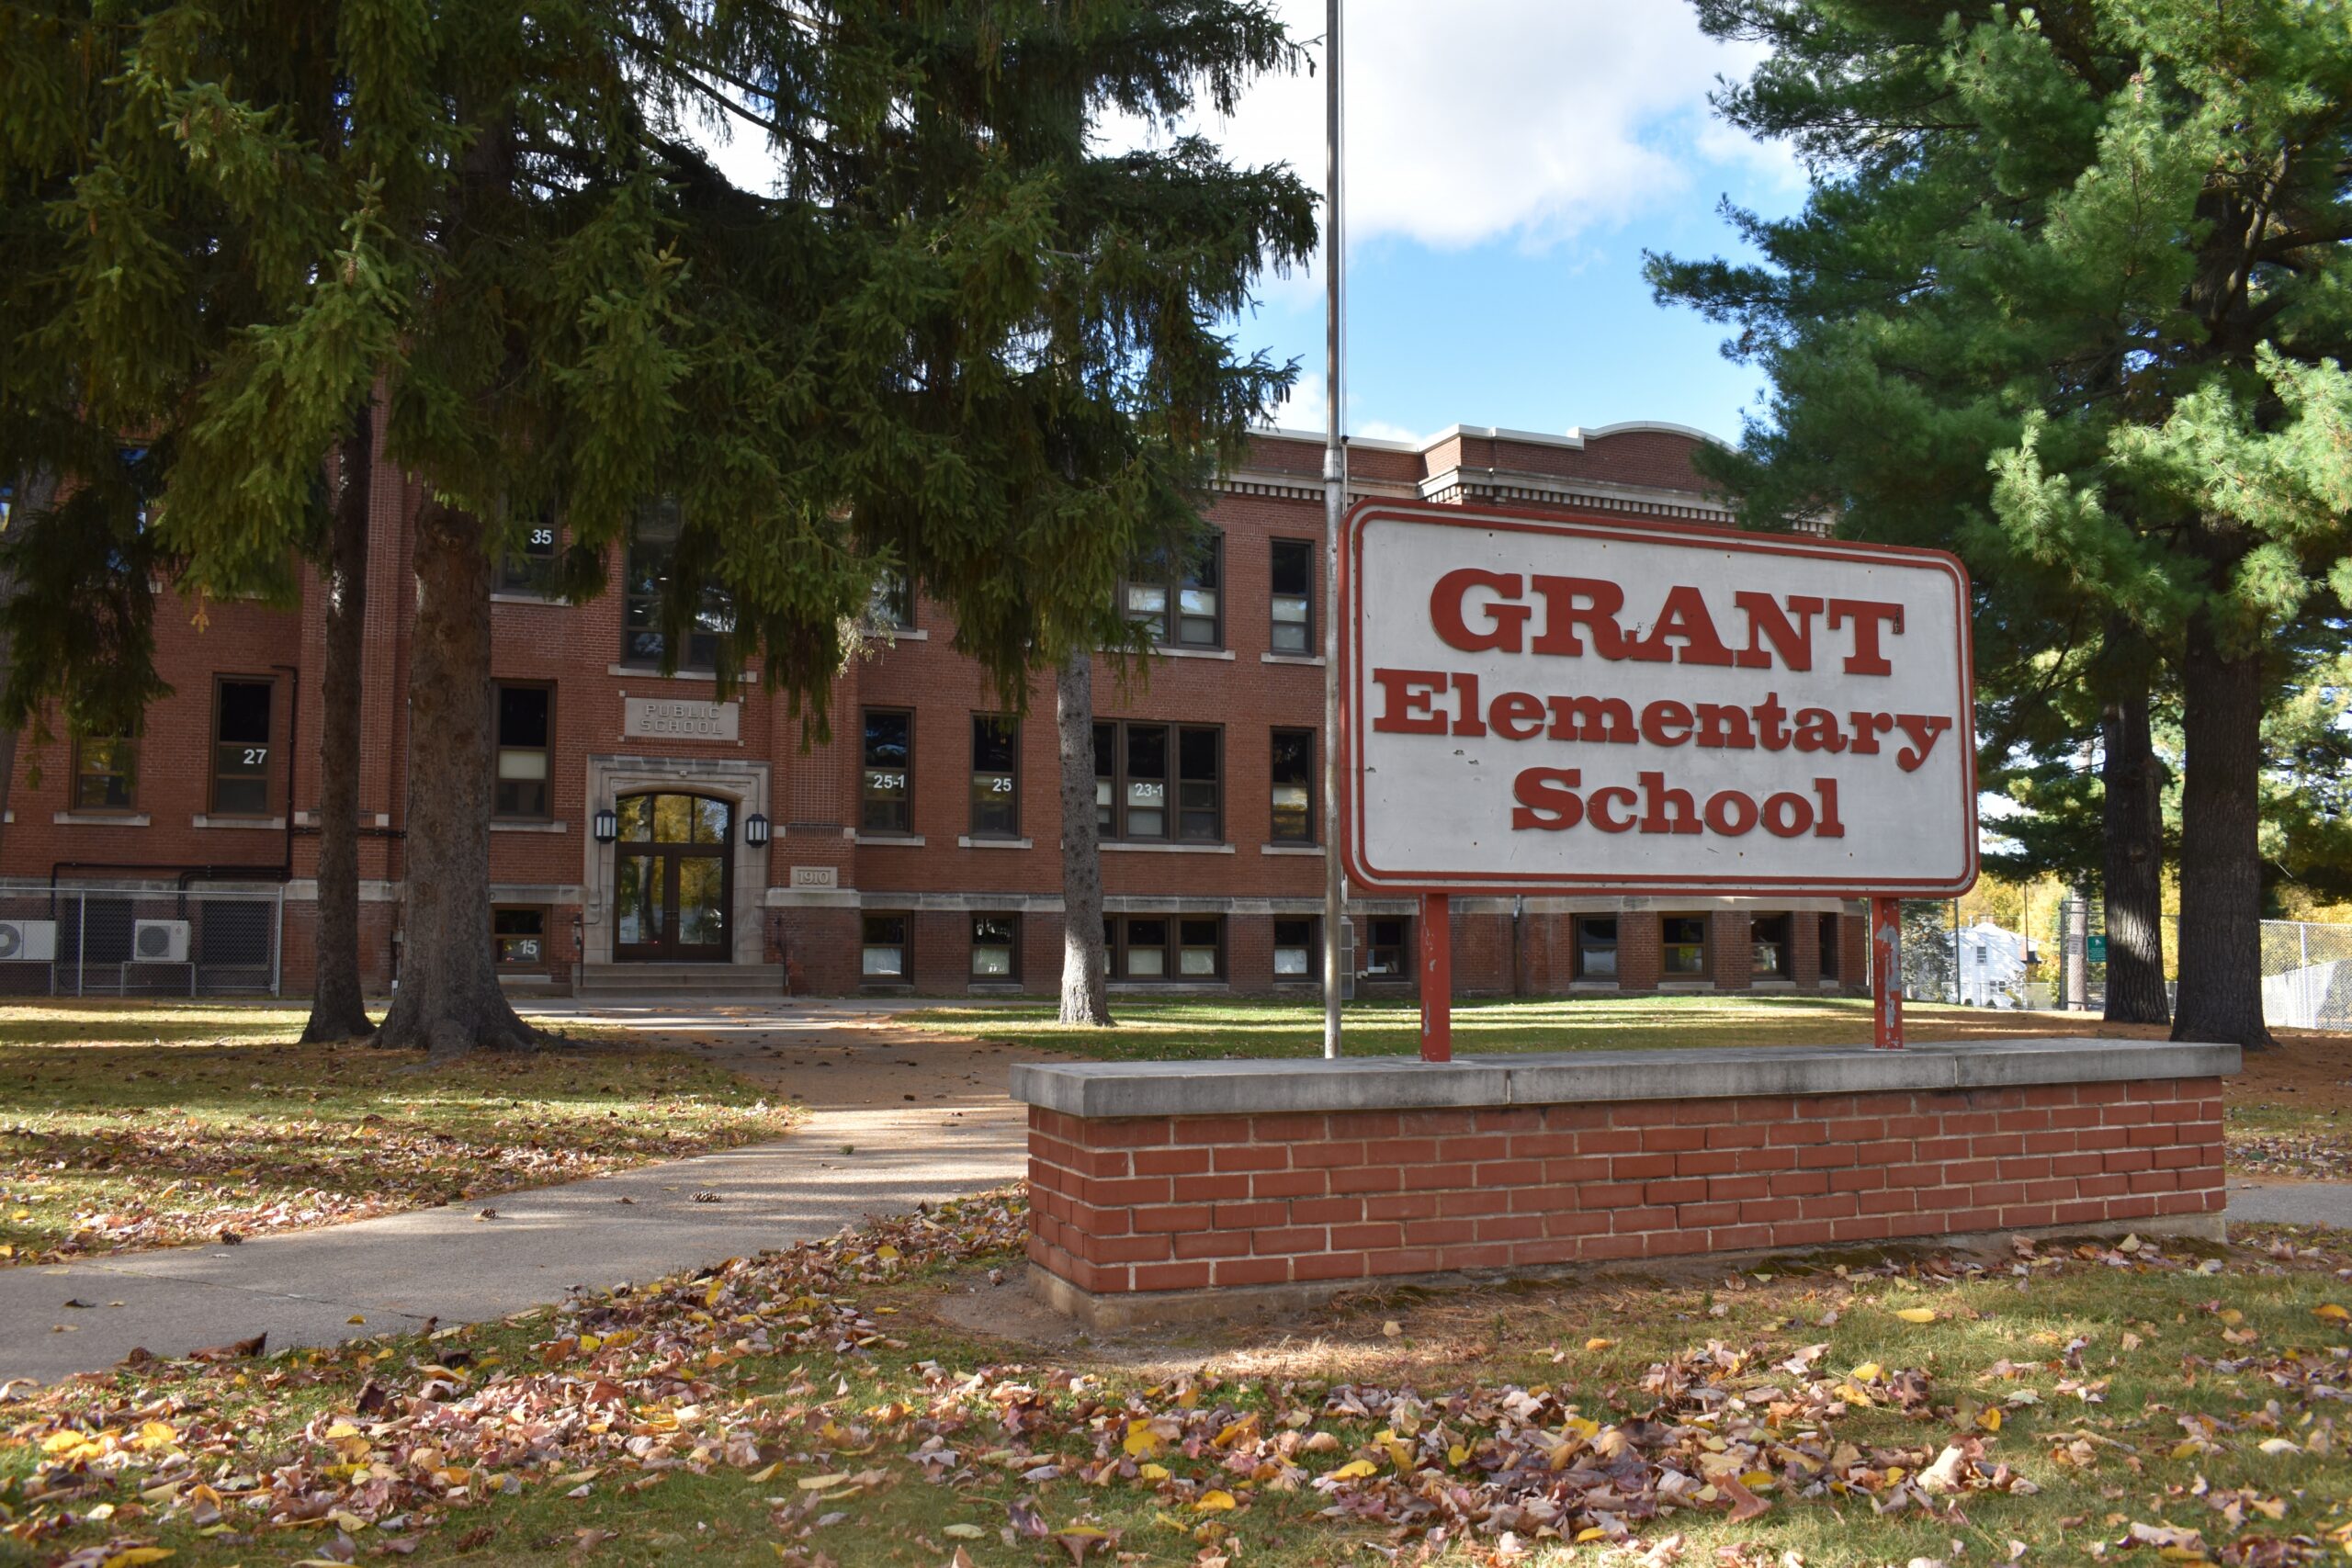 Grant Elementary School in Wausau